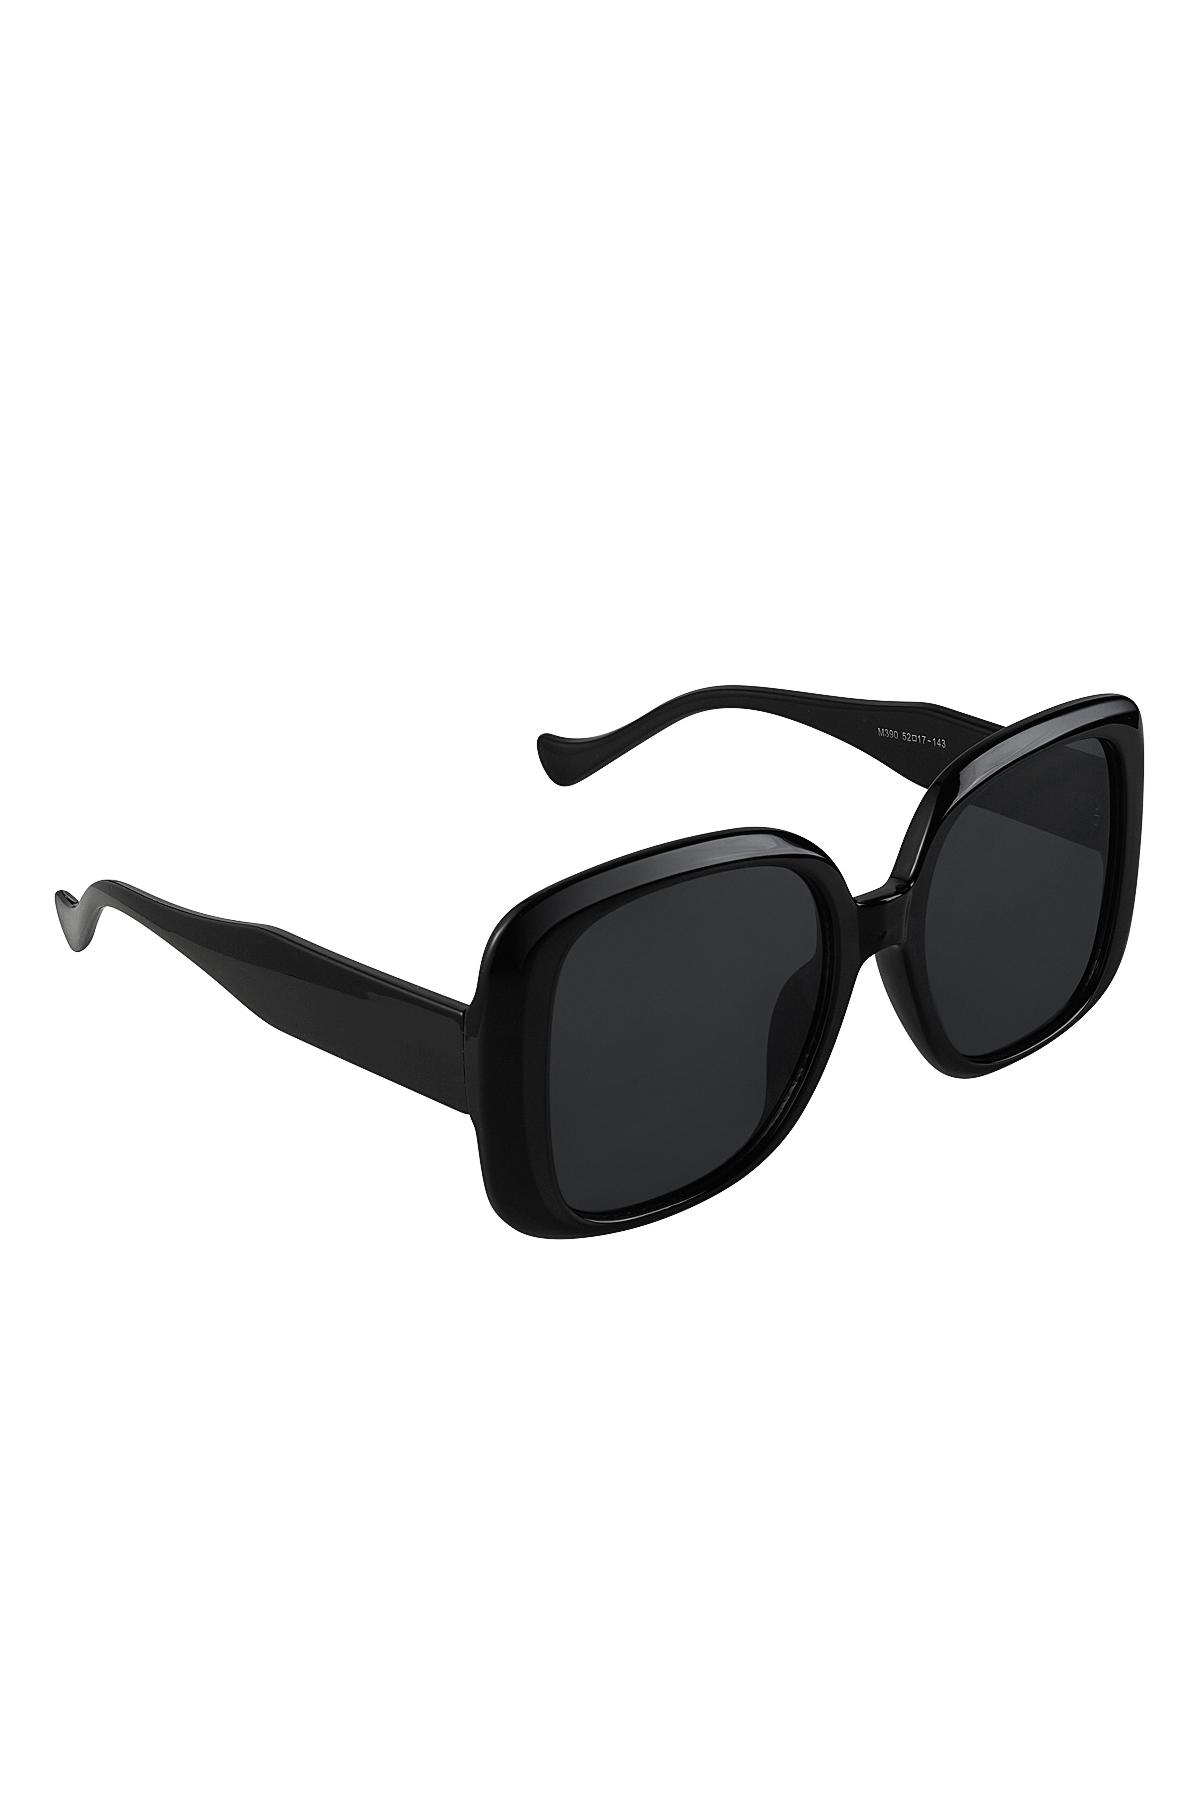 Sonnenbrille einfach Schwarz PC One size